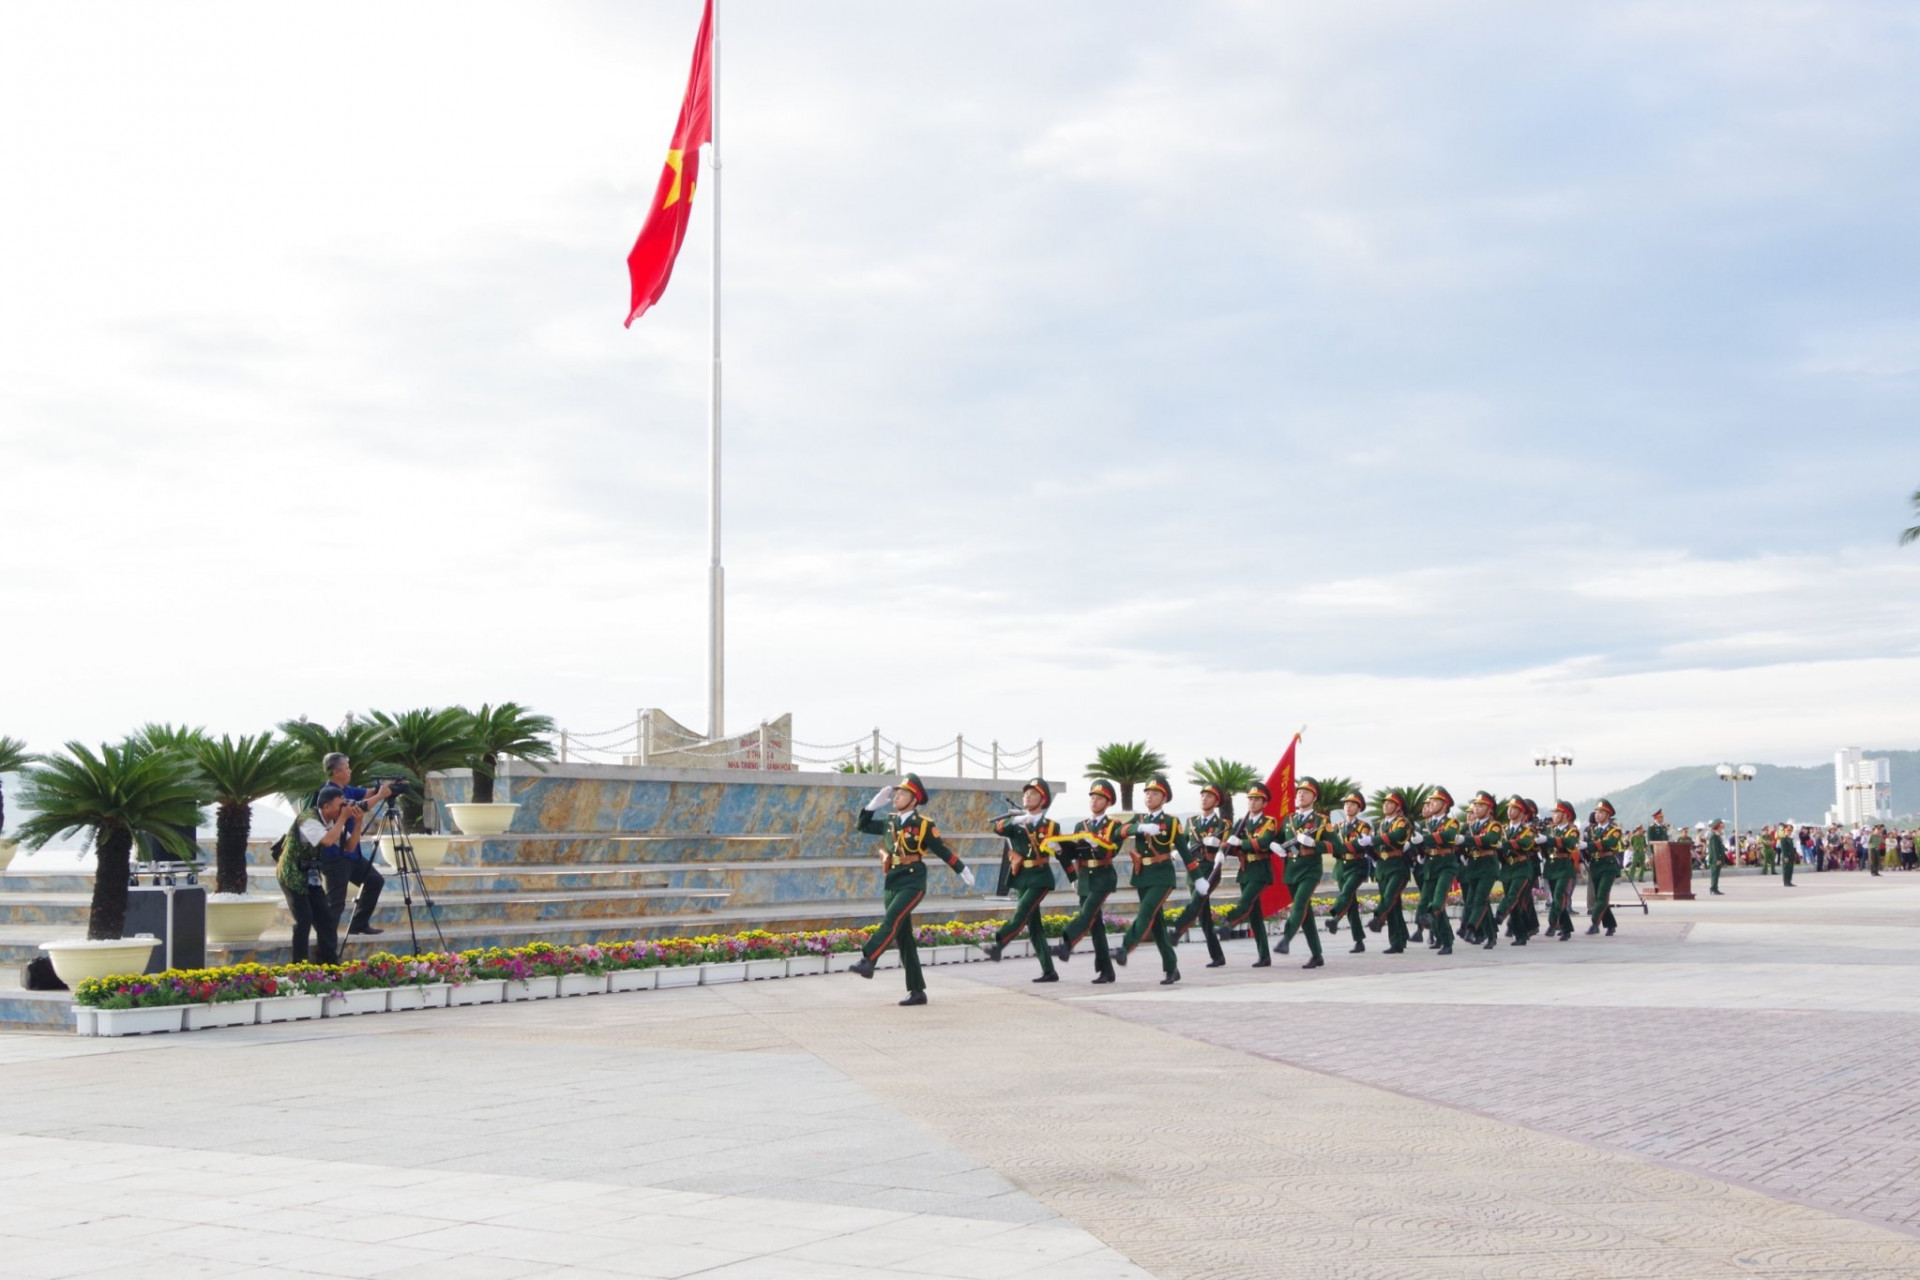 Hình ảnh trong Lễ thượng cờ chào mừng 78 năm Quốc khánh nước Cộng hòa xã hội chủ nghĩa Việt Nam tại Quảng trường 2 tháng 4. Ảnh: T.A.

